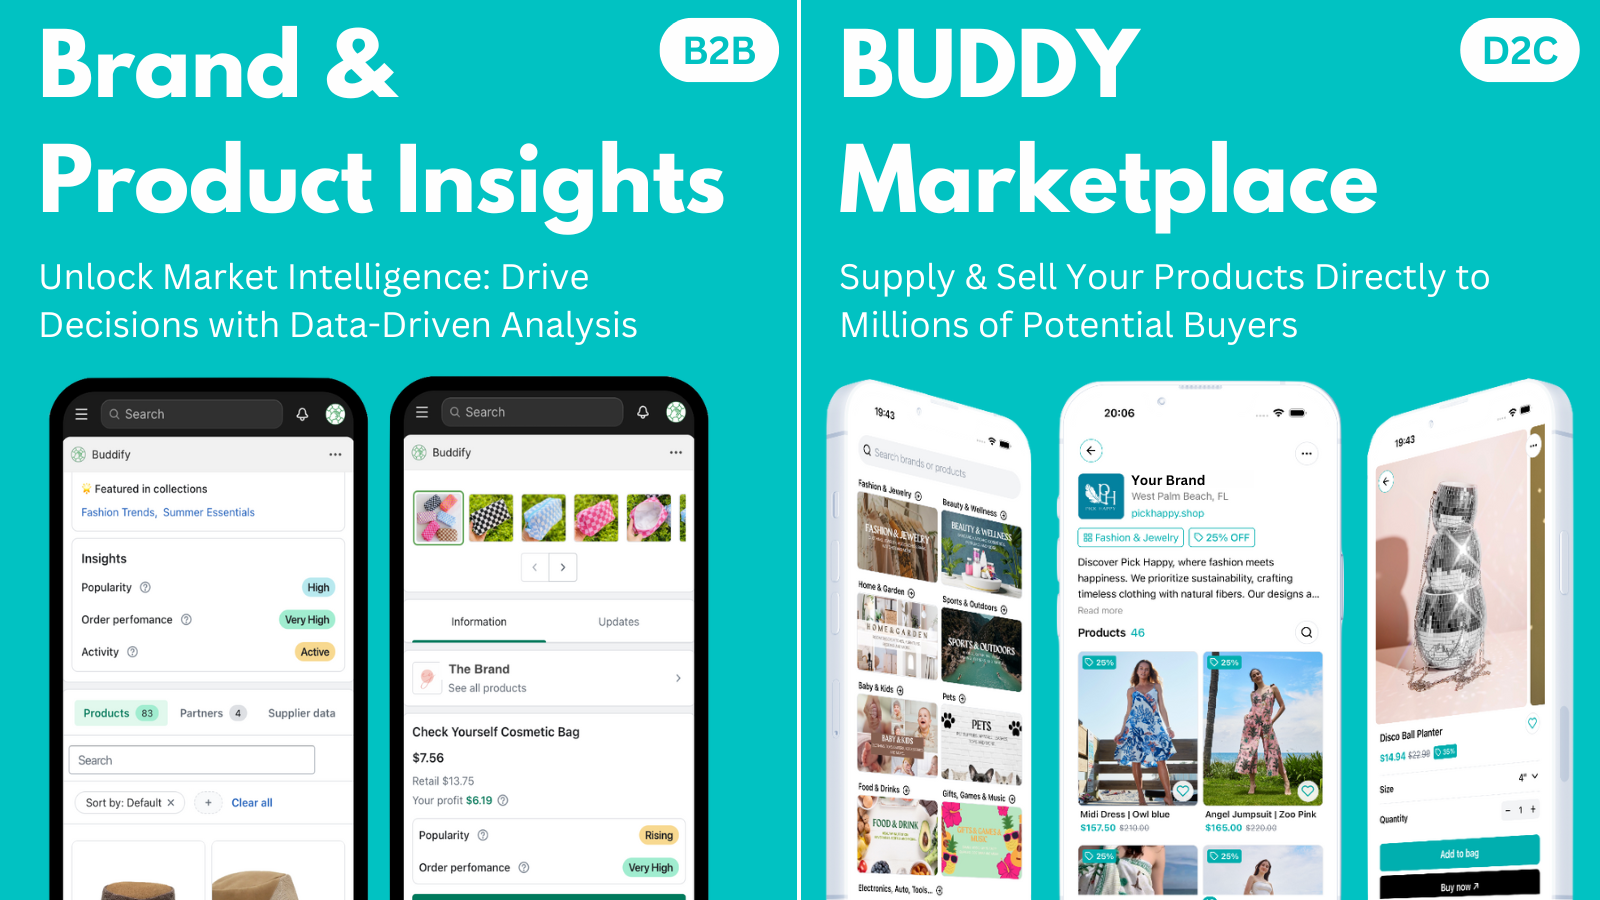 Merk- & Productinzichten en BUDDY Marketplace